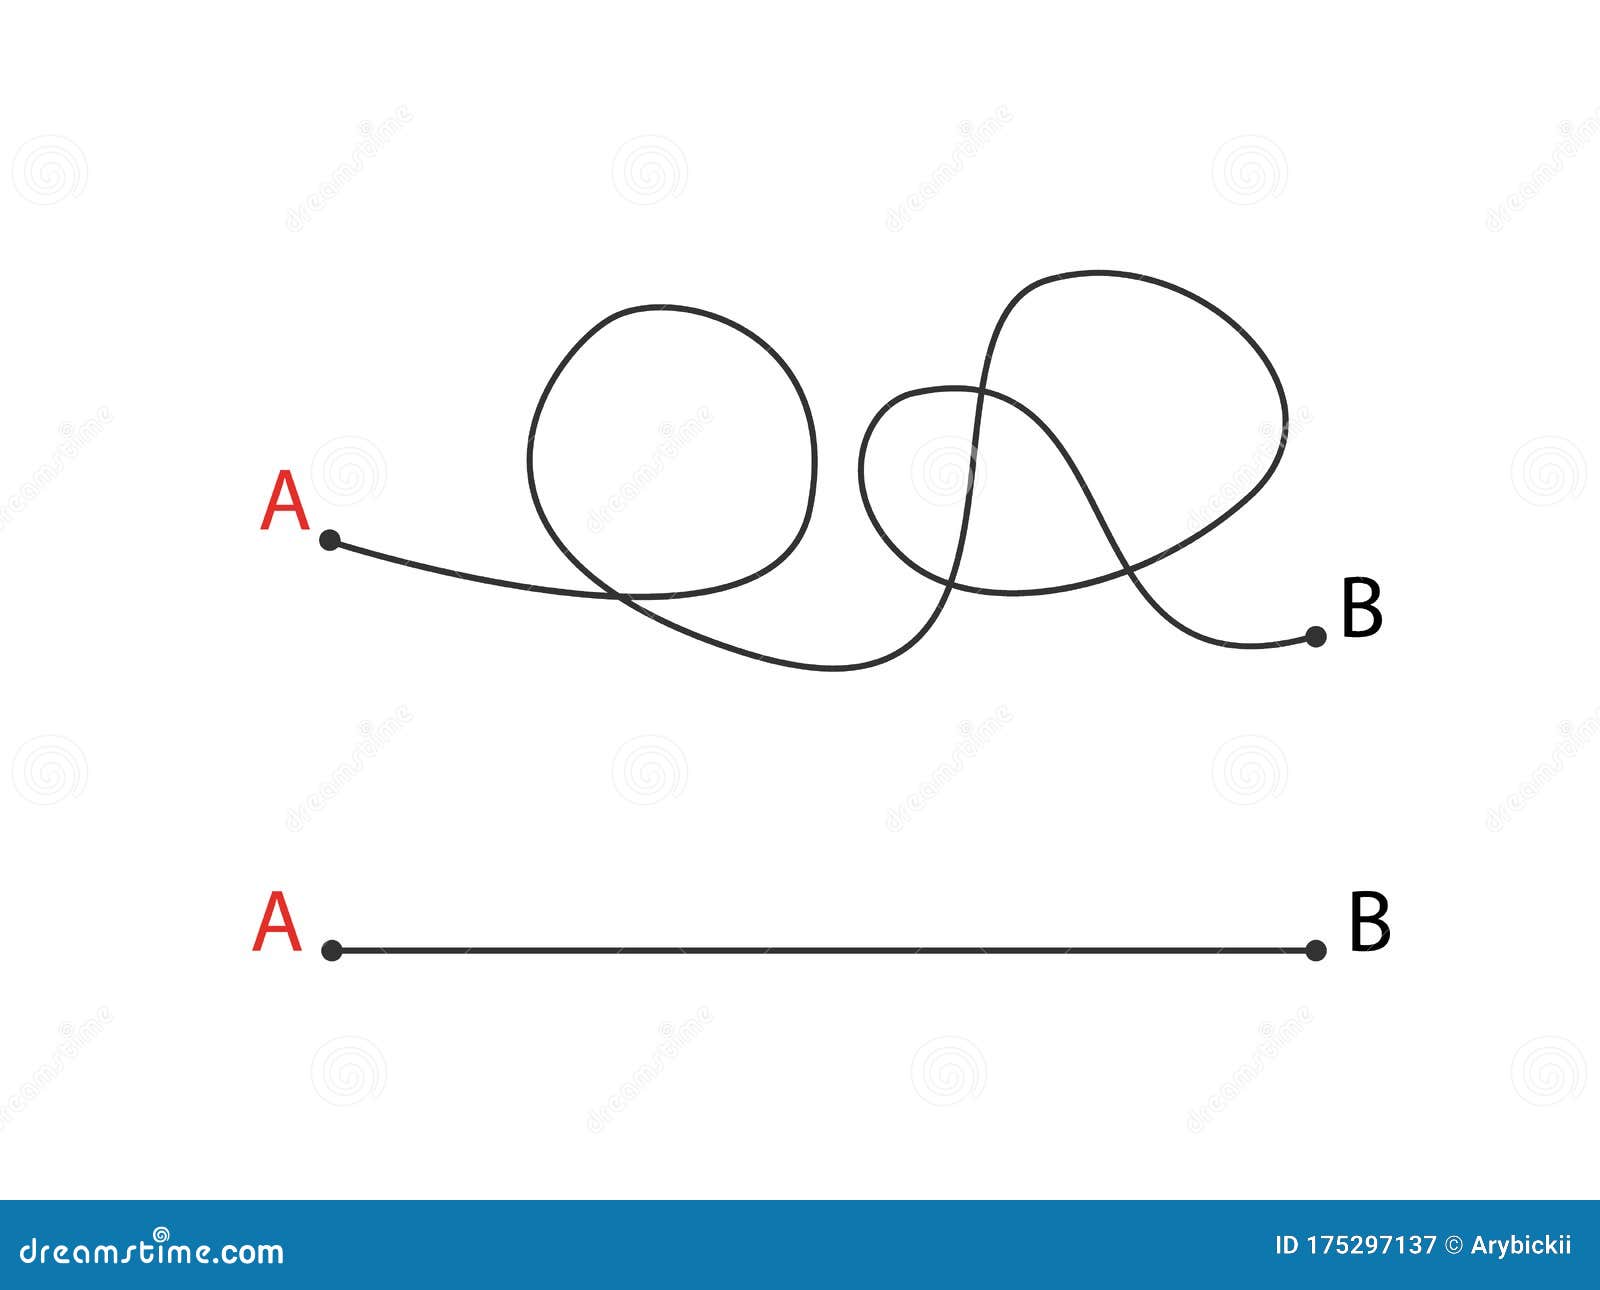 Из точки а в точку б маршрут. Путь из точки а в точку б картинки. Из точки а в точку б. Небрежный рисунок от точки а к б. Линии выходящие из точки.